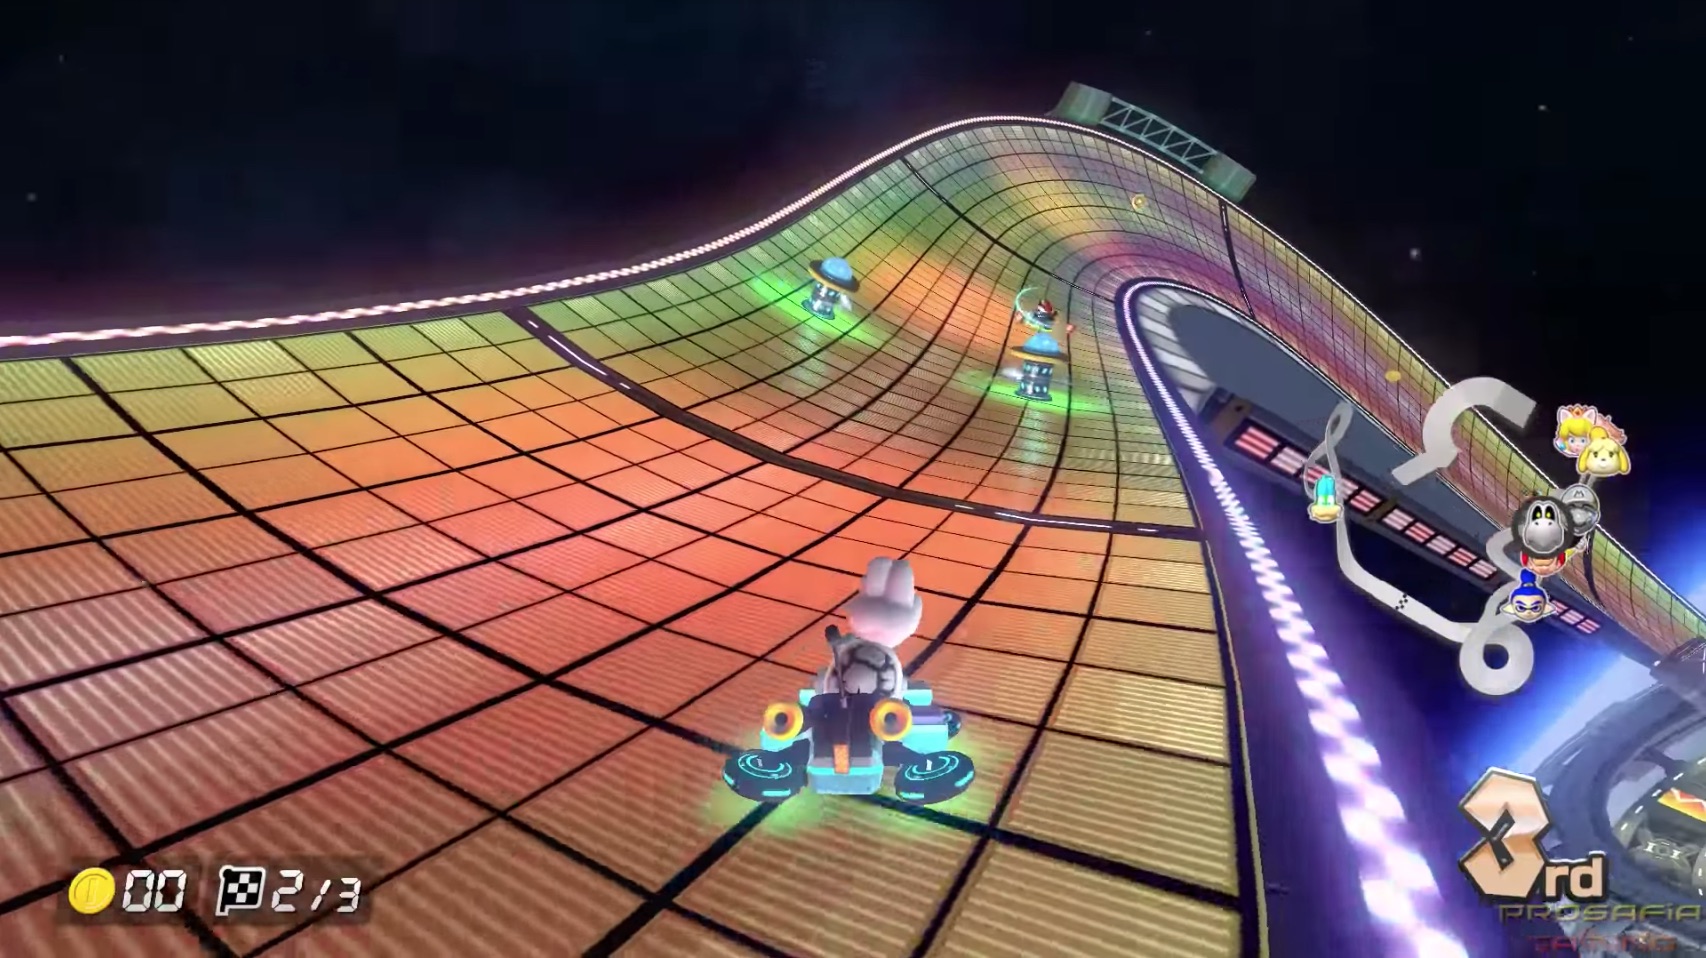 Mario Kart 8 Deluxe gameplay footage (2017)